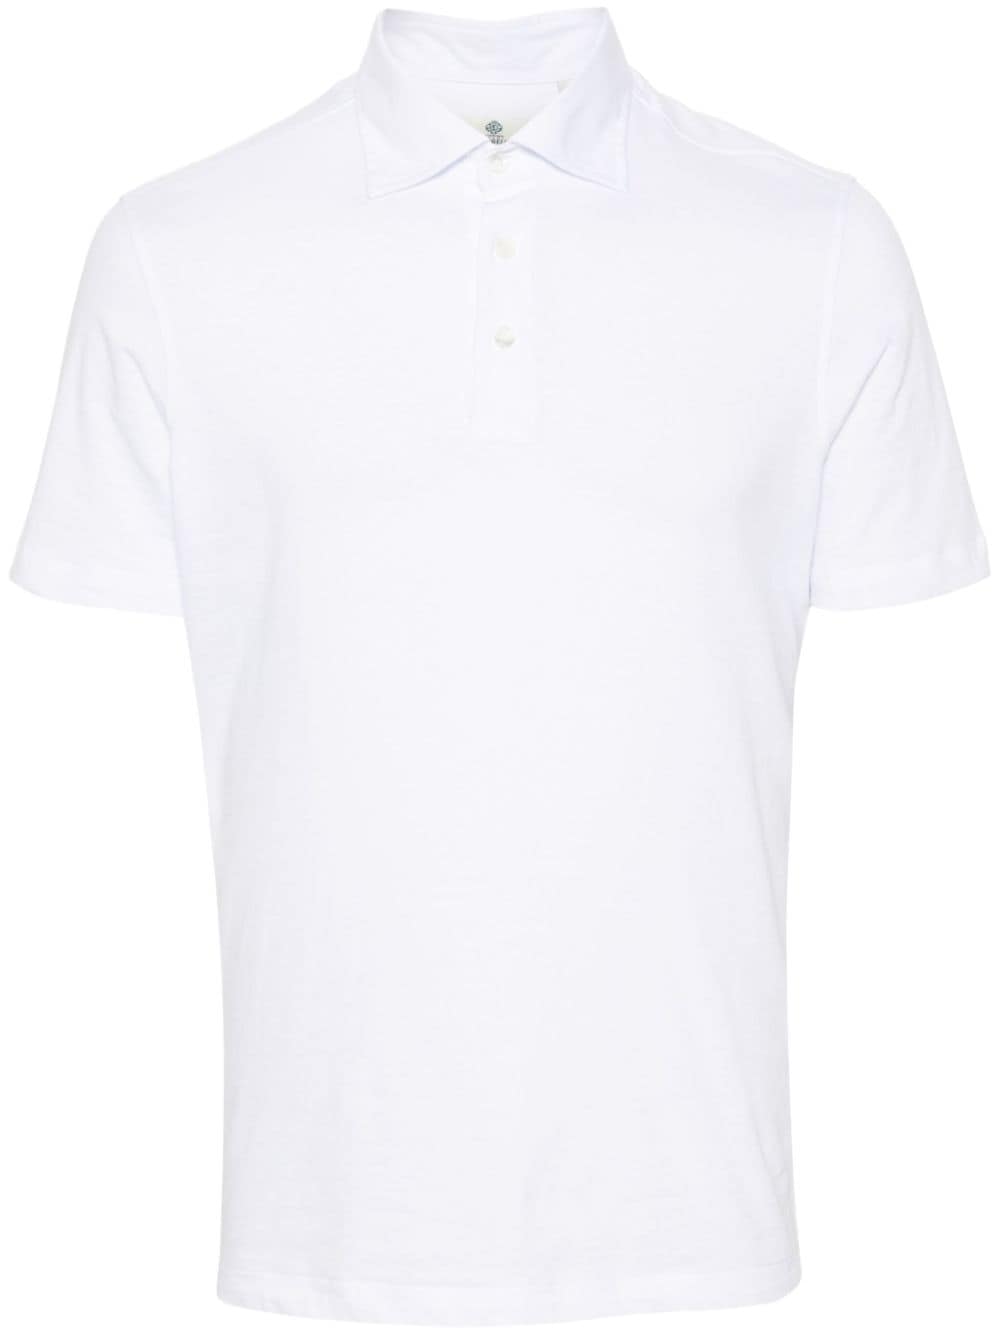 Borrelli jersey cotton polo shirt - White von Borrelli